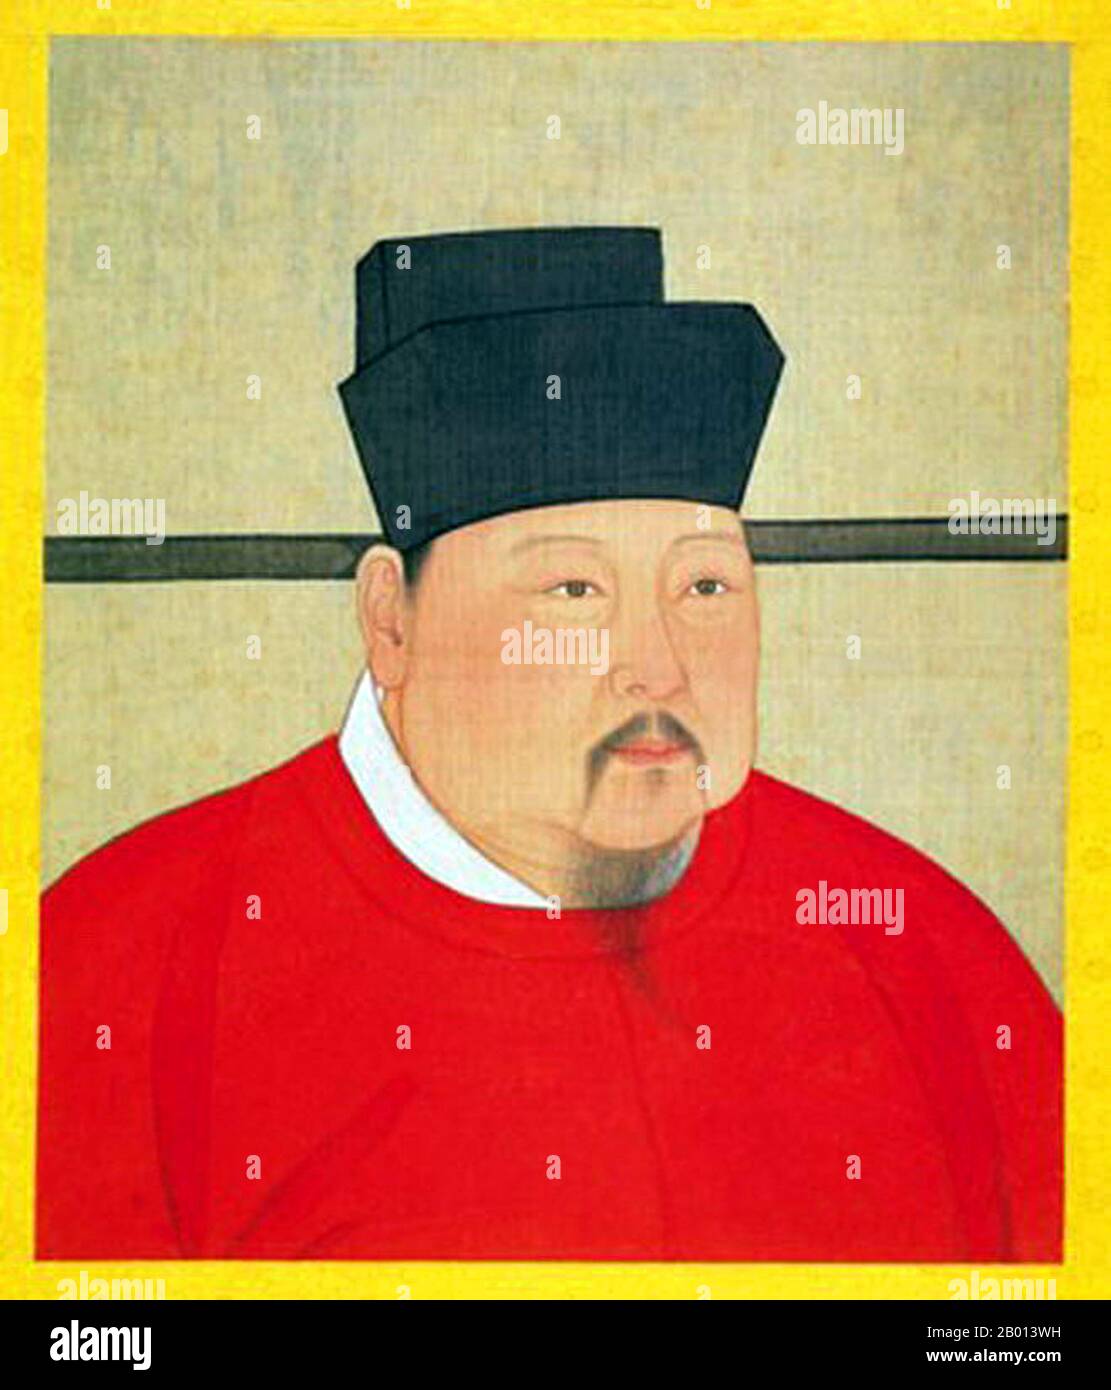 Cina: Imperatore Zhengzong (Zhao Heng, 23 dicembre 968 - 23 marzo 1022), 3° sovrano della dinastia (nord) della canzone (r. 997-1022). Pittura a scorrimento sospesa, c. 997-1022. Zhenzong di Song, nome personale Zhao Heng e precedentemente conosciuto come Zhao Dechang, Zhao Yuanxiu e Zhao Yuankan, fu il terzo imperatore della dinastia Song. Il suo regno fu notato per il consolidamento del potere e per il rafforzamento della dinastia. Il paese prosperò, e la sua potenza militare fu ulteriormente rafforzata. Foto Stock